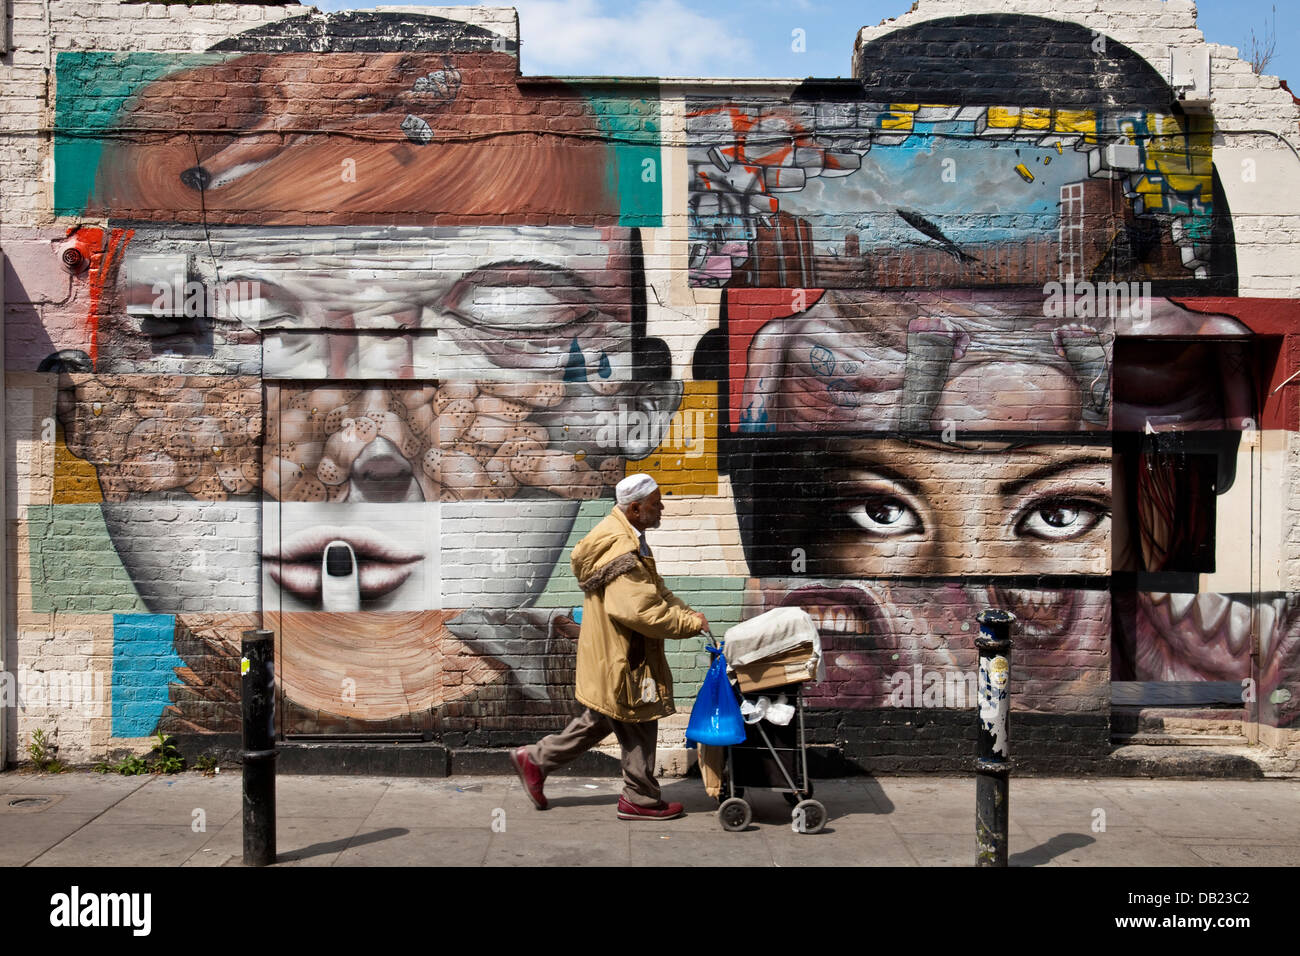 Graffiti, Brick Lane, London, England Stock Photo